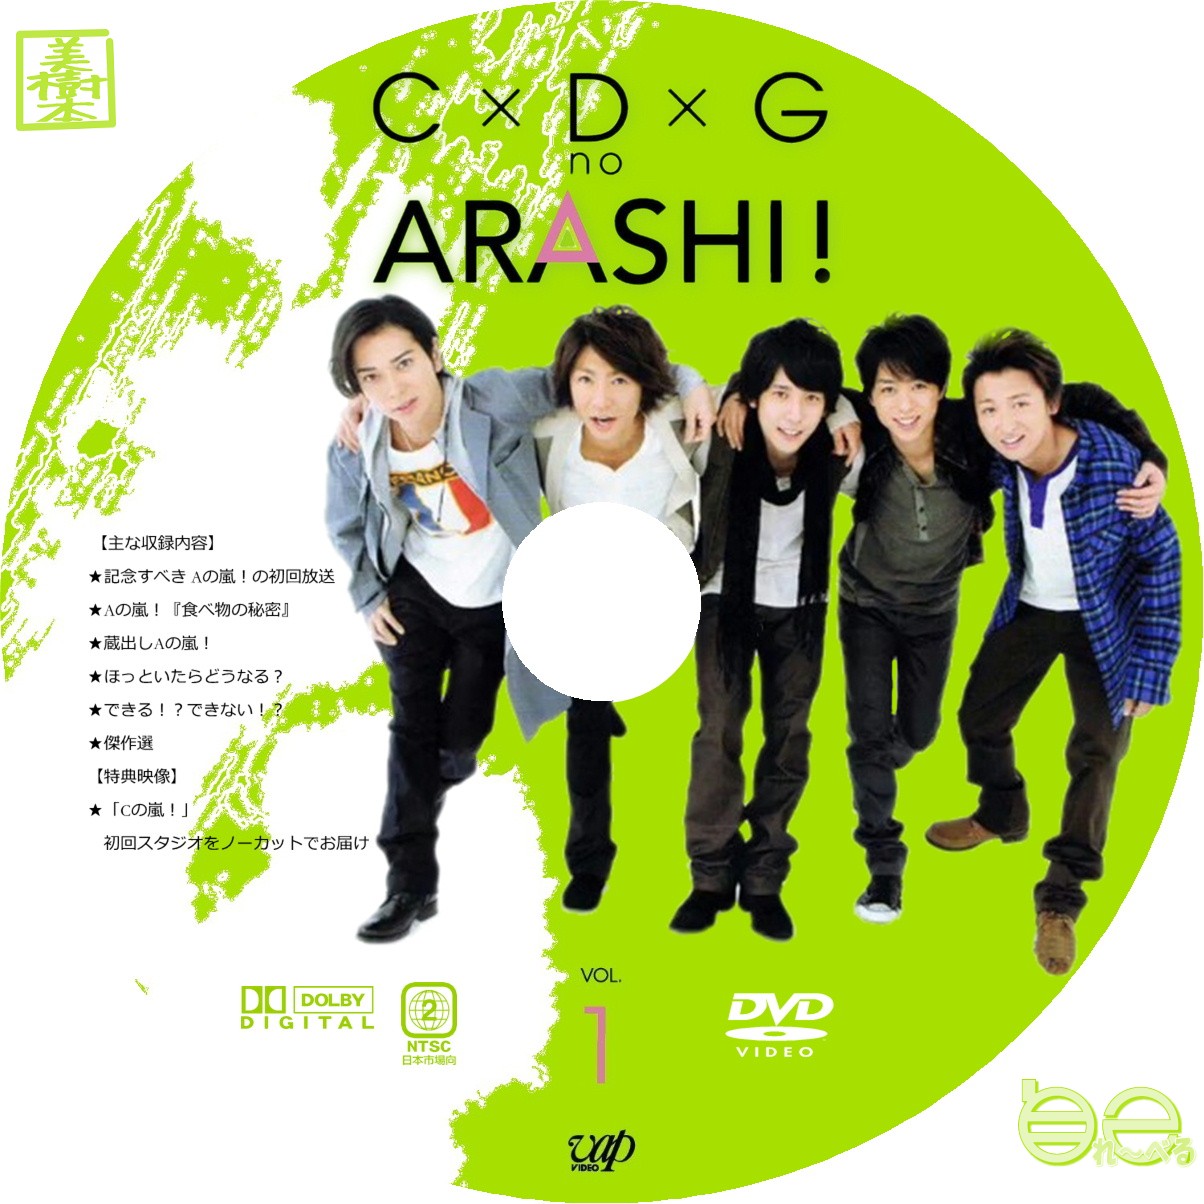 発売モデル C×D×G no ARASHI VOL.1.2 激レアチャーム付 ai-sp.co.jp